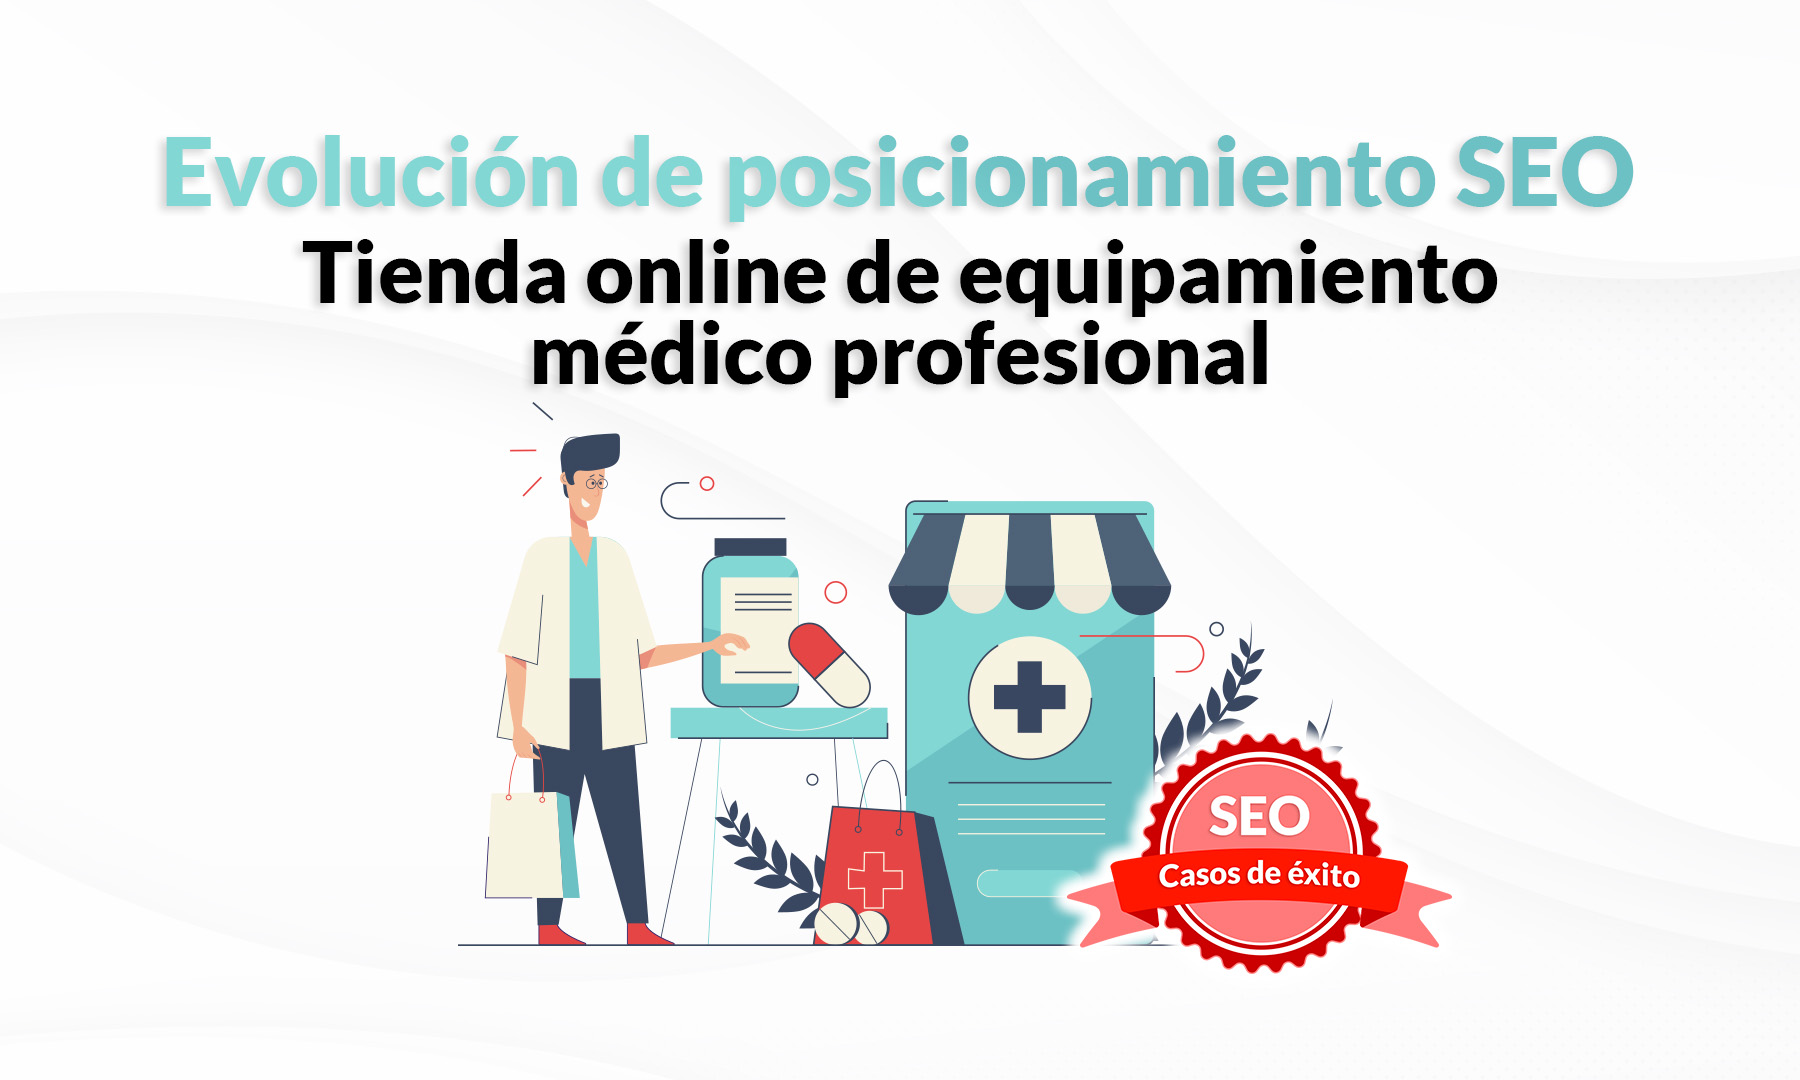 Caso de éxito SEO: tienda online de equipamiento médico profesional